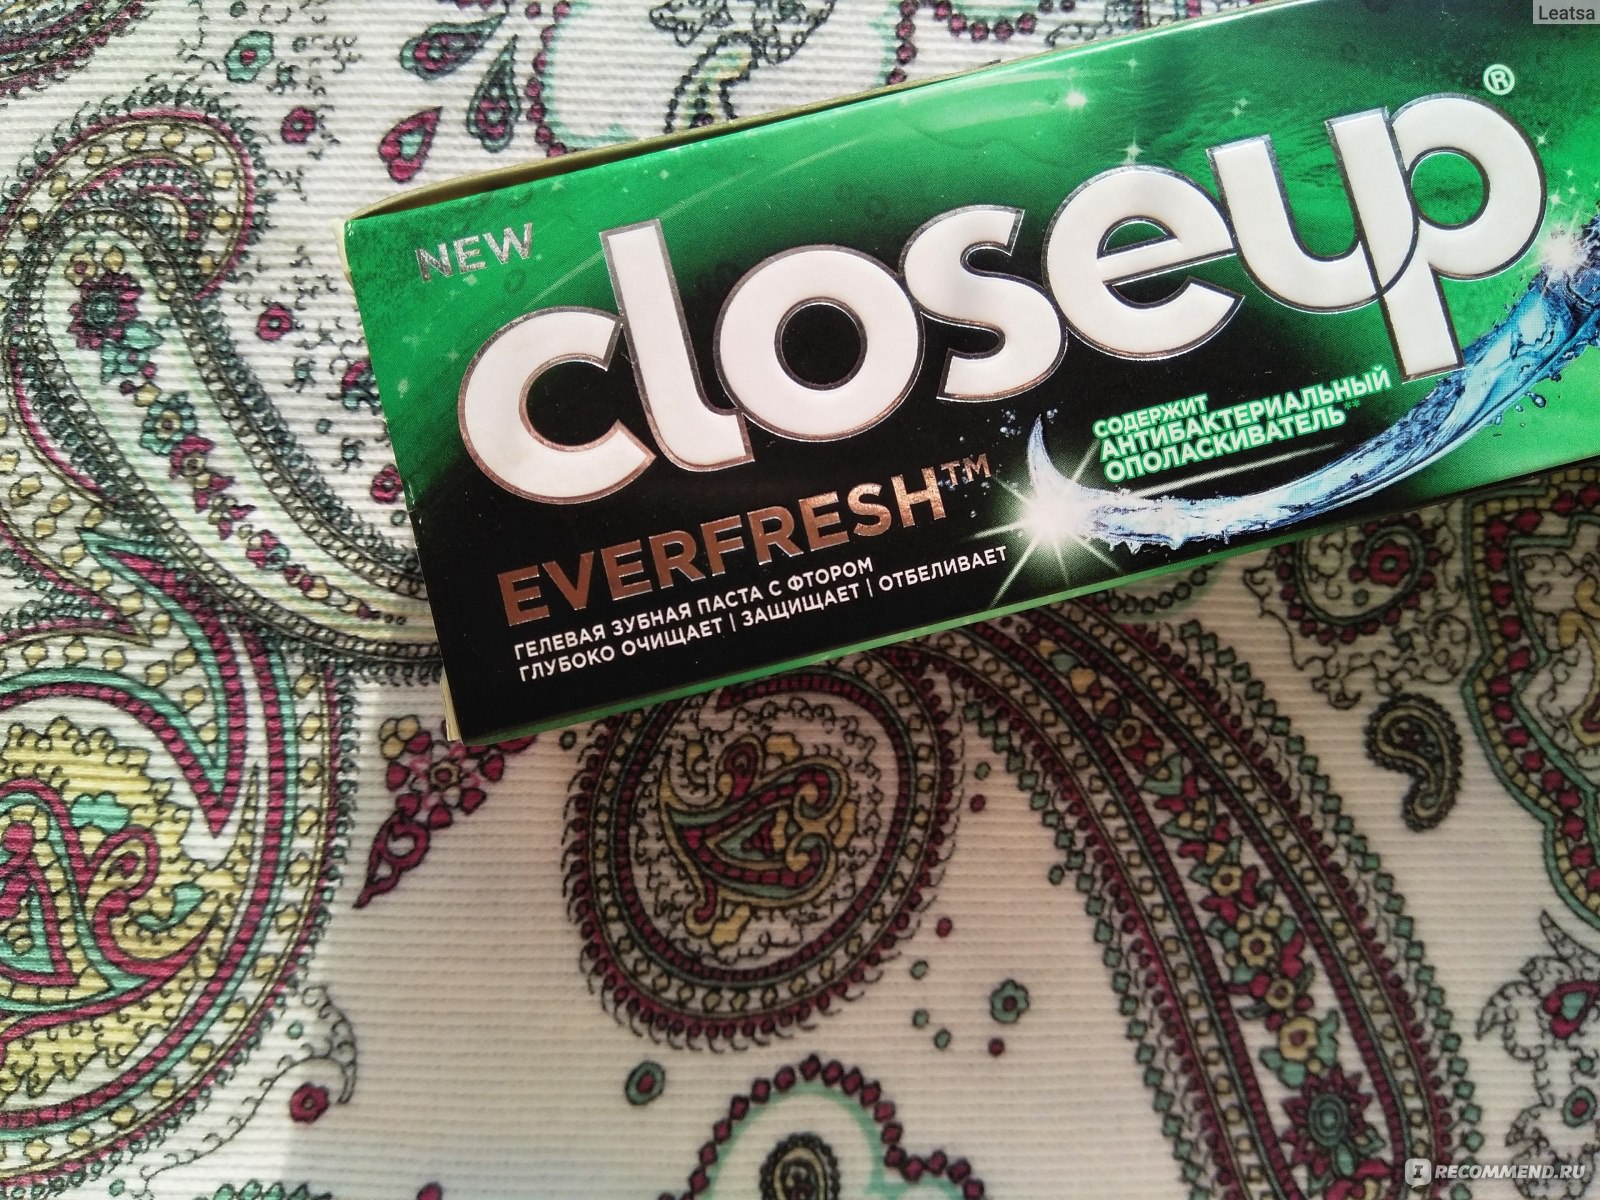 Зубная паста Closeup Everfresh мятный заряд фото